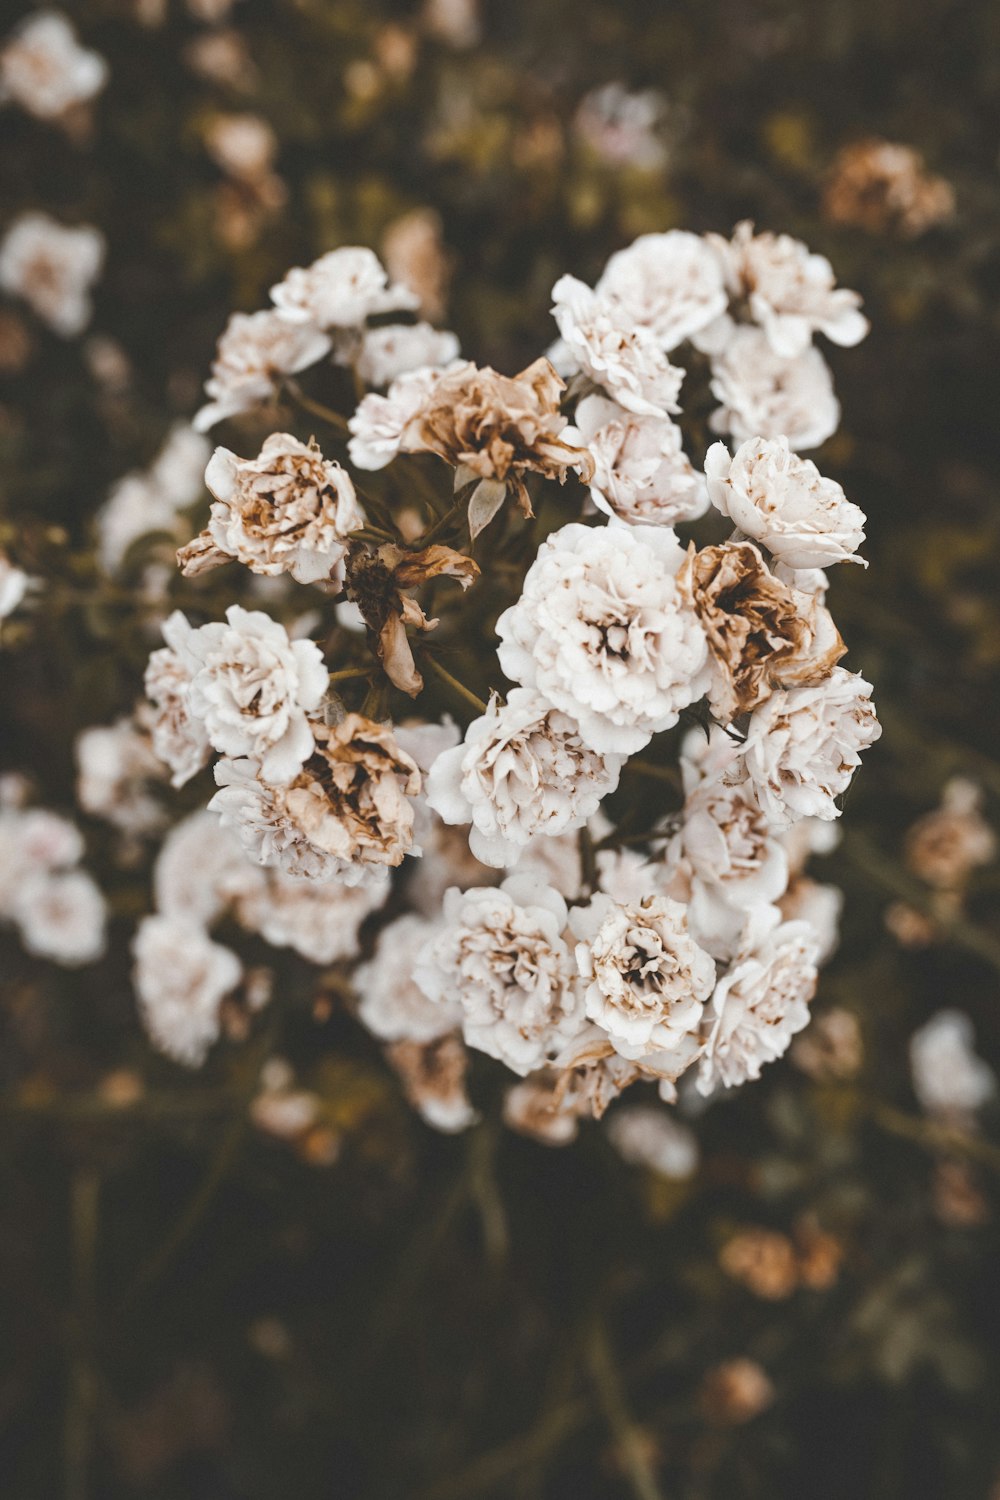 Fotografía de enfoque selectivo de flores de pétalos blancos